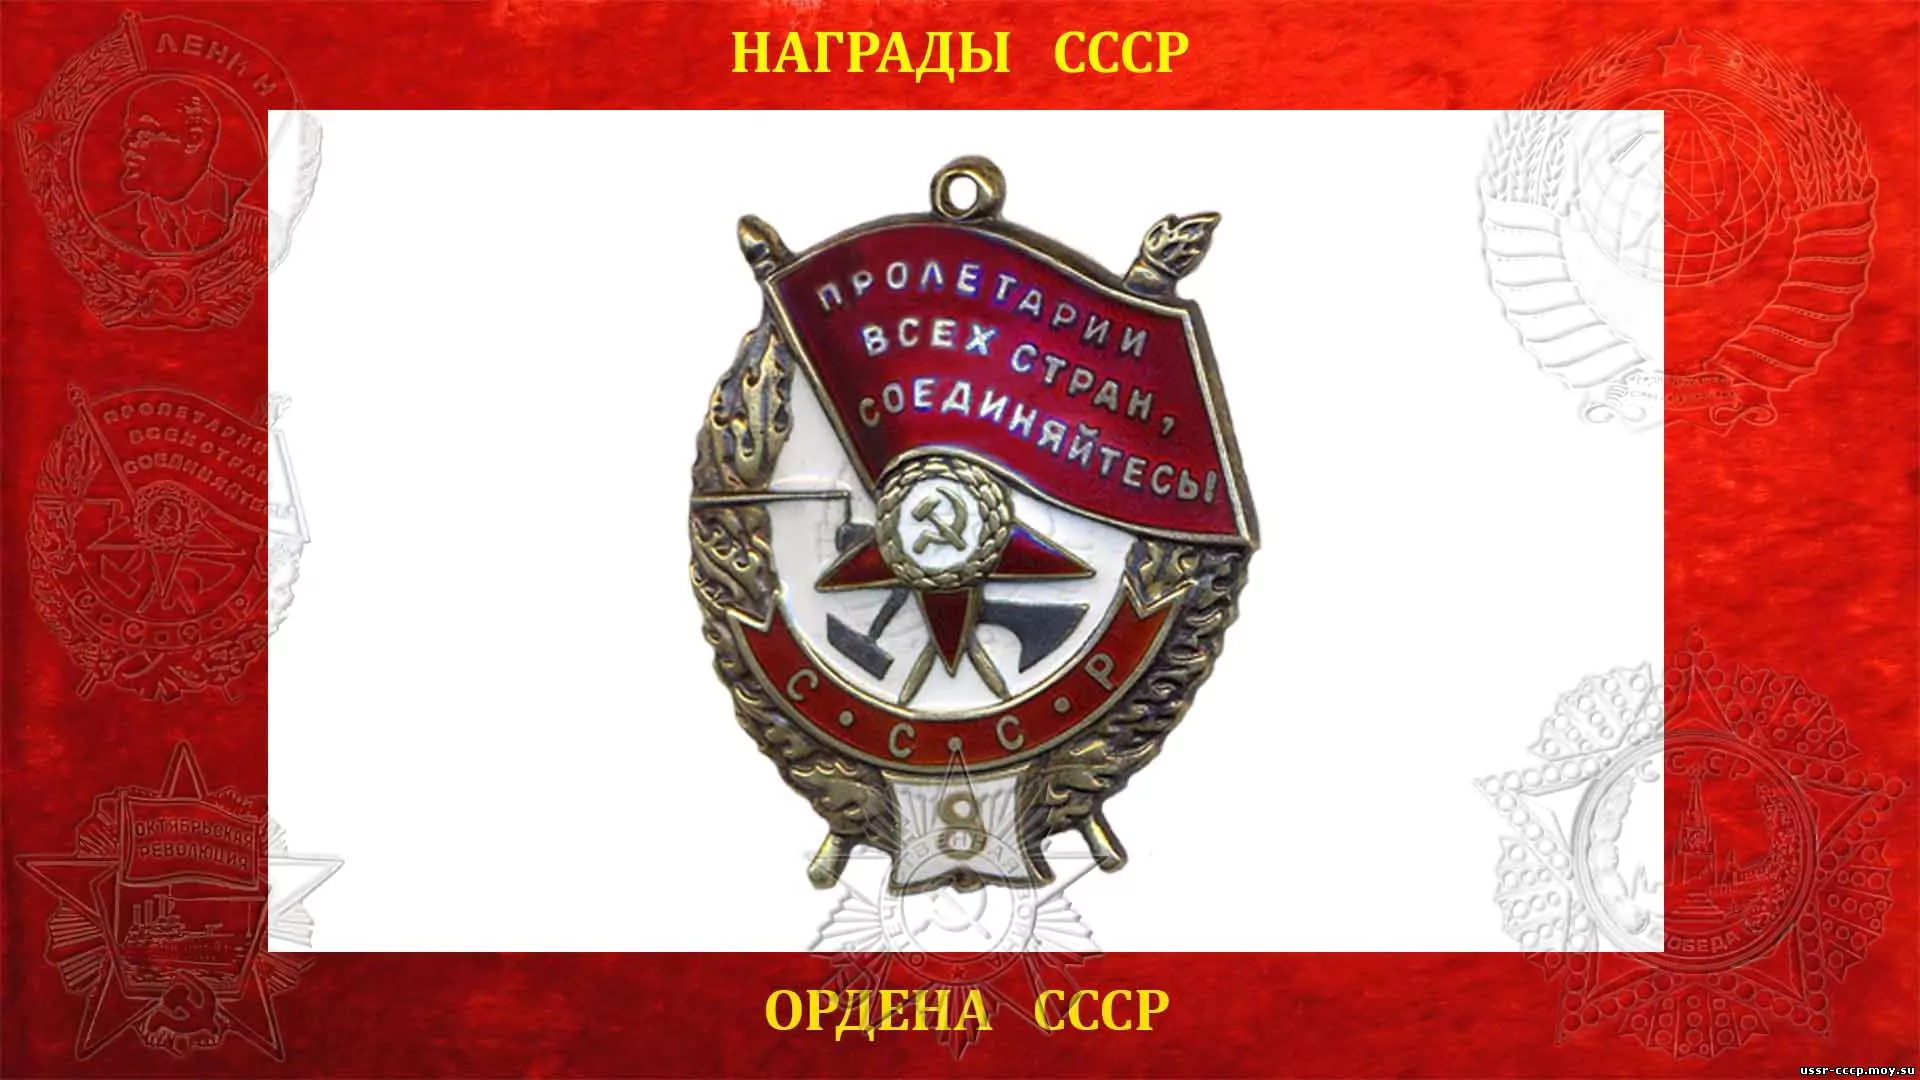 19-ти летний Петр Черепенин получил Орден Красного Знамени за переправу 65 товарищей под открытым огнем противника